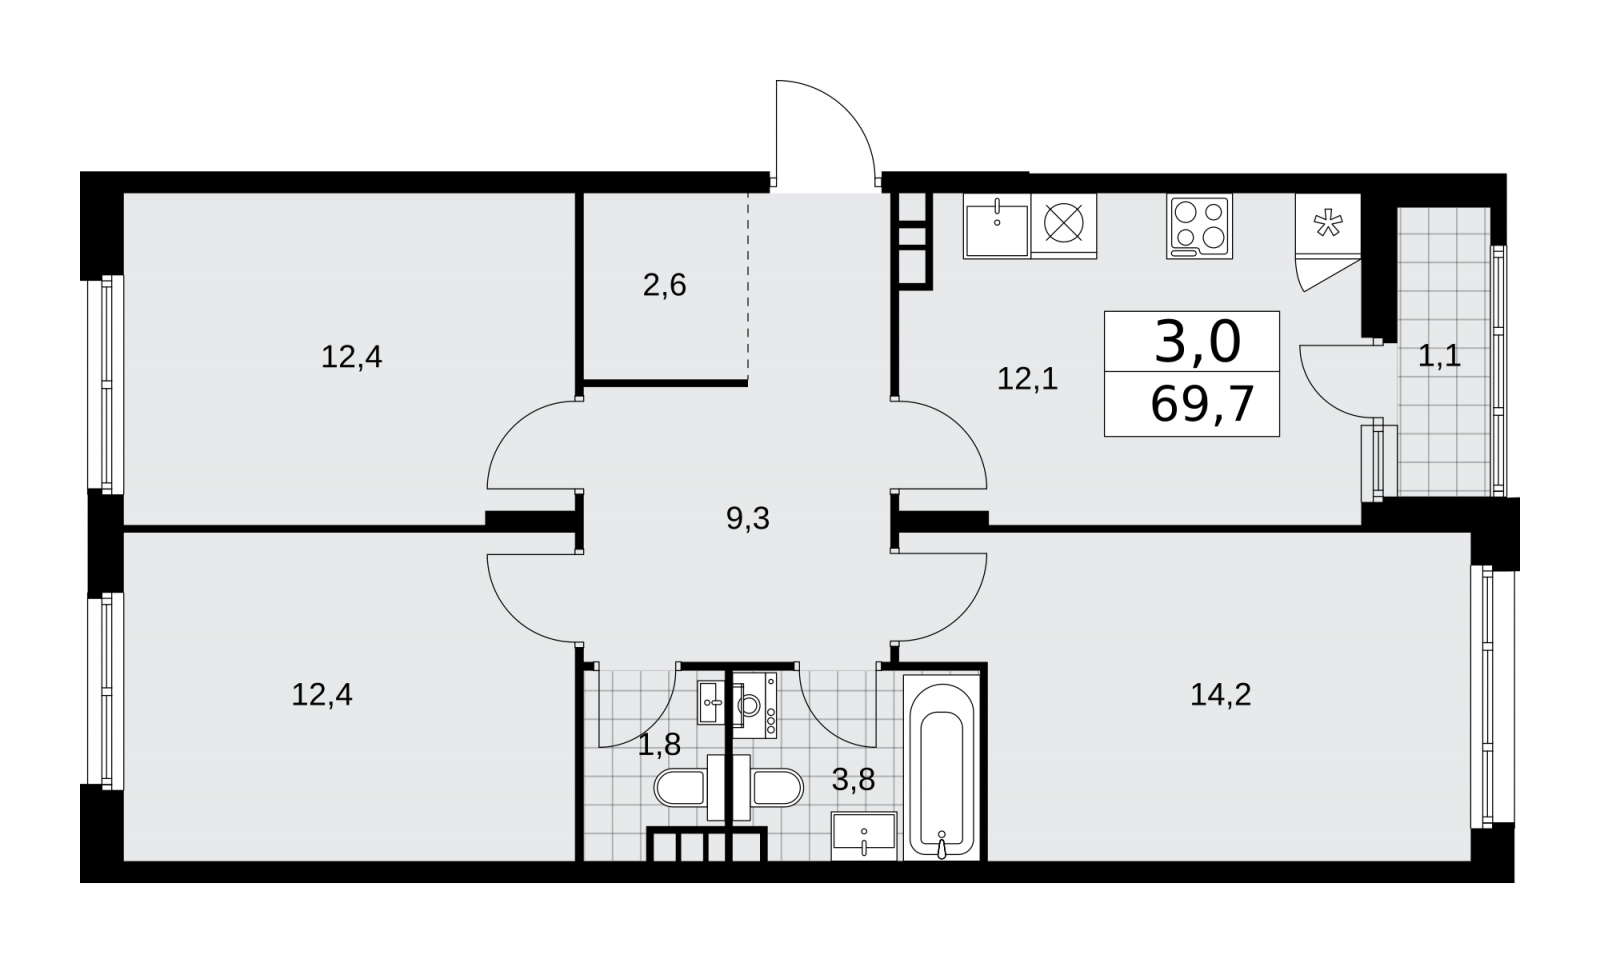 Продается трехкомнатная квартира в новом жилом комплексе, метро рядом